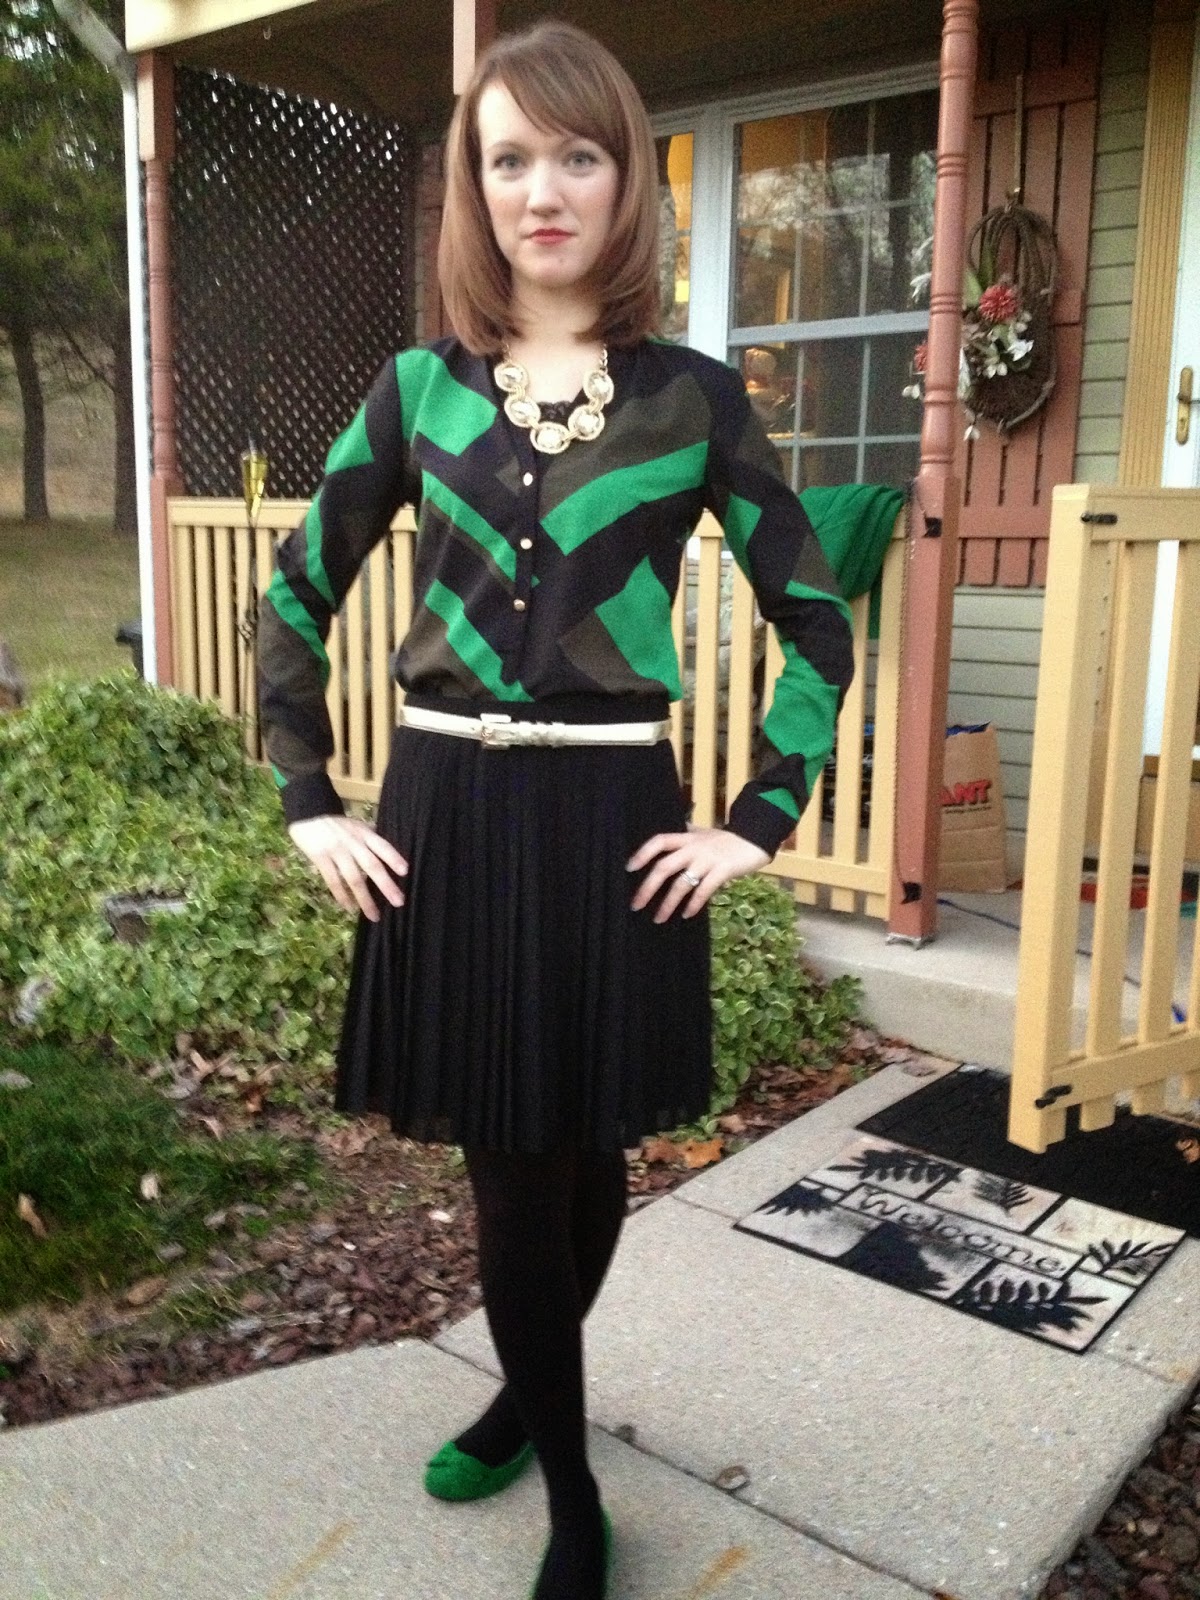 A Little Bit of WoWe : Teacher Style: Black Skirt Inspiration